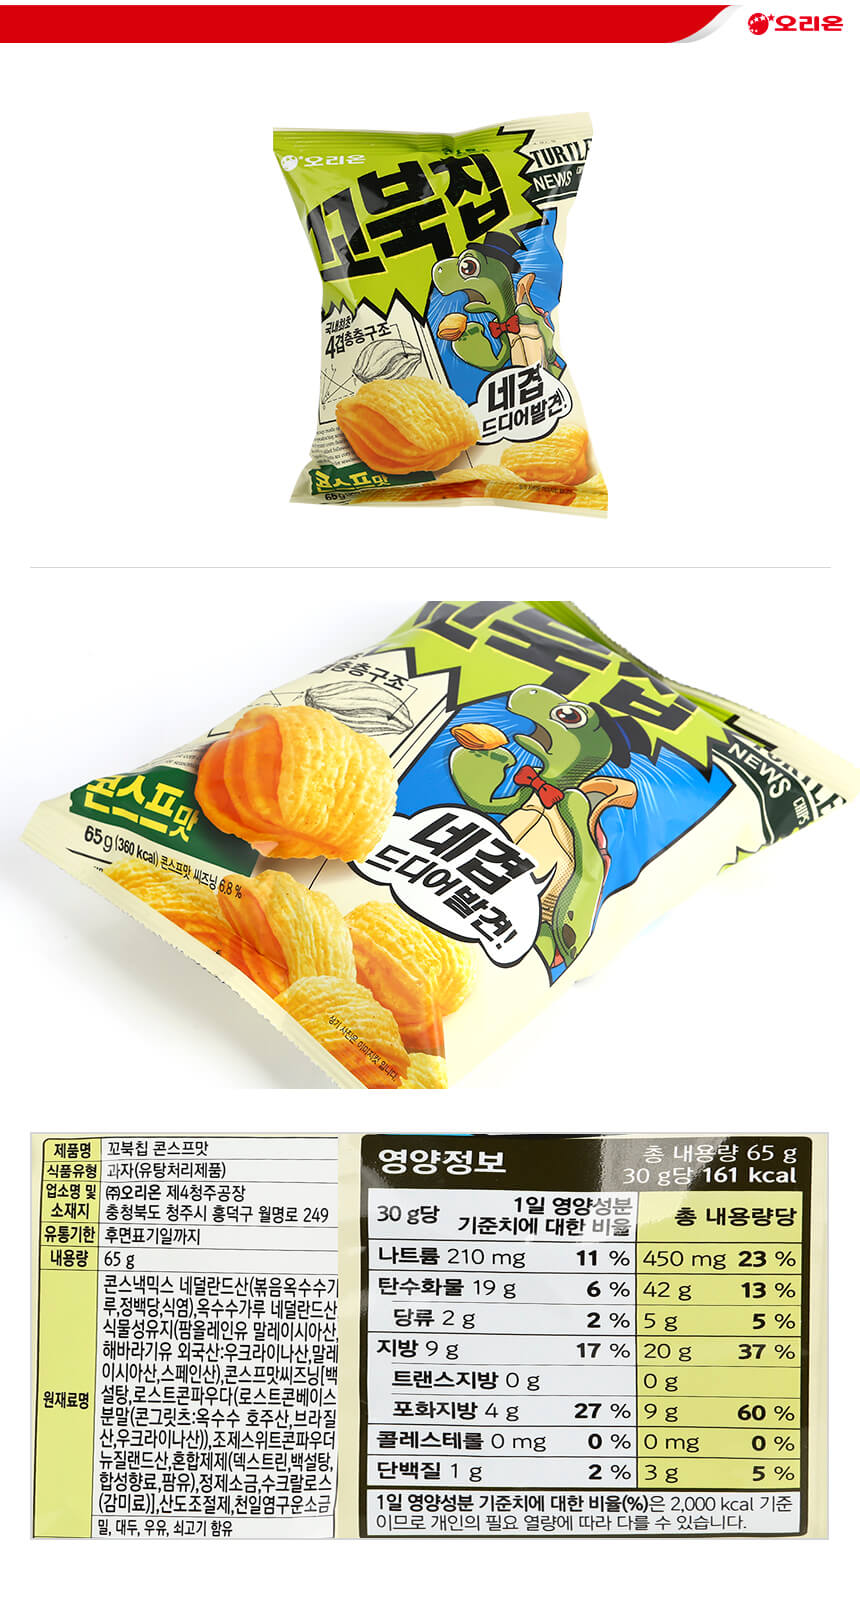 韓國食品-[Orion] Turtle-shaped Snack[Corn Soup] 65g